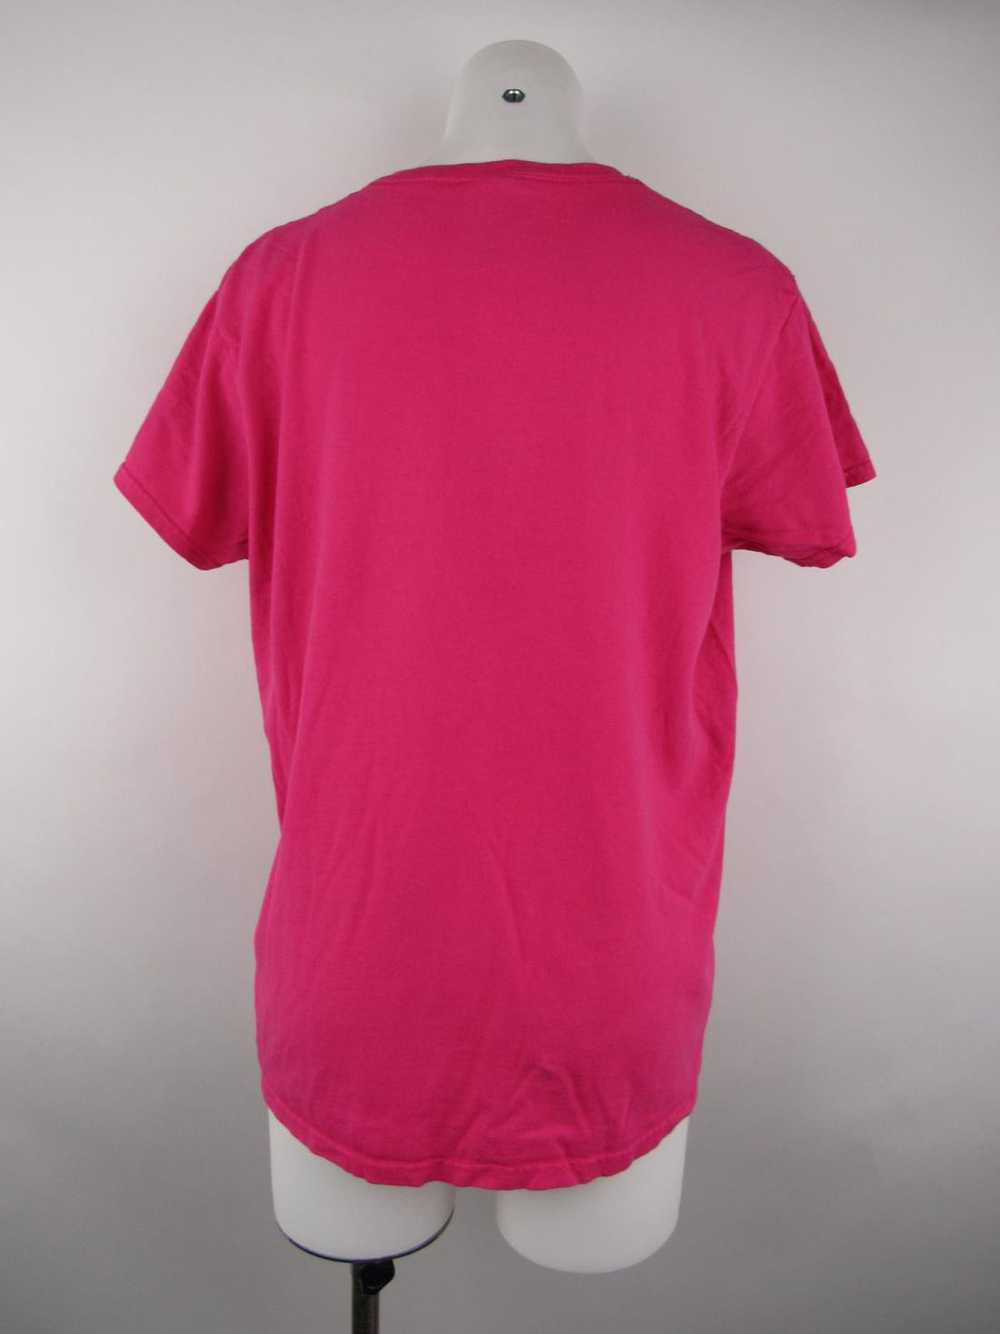 Gildan T-Shirt Top - image 2